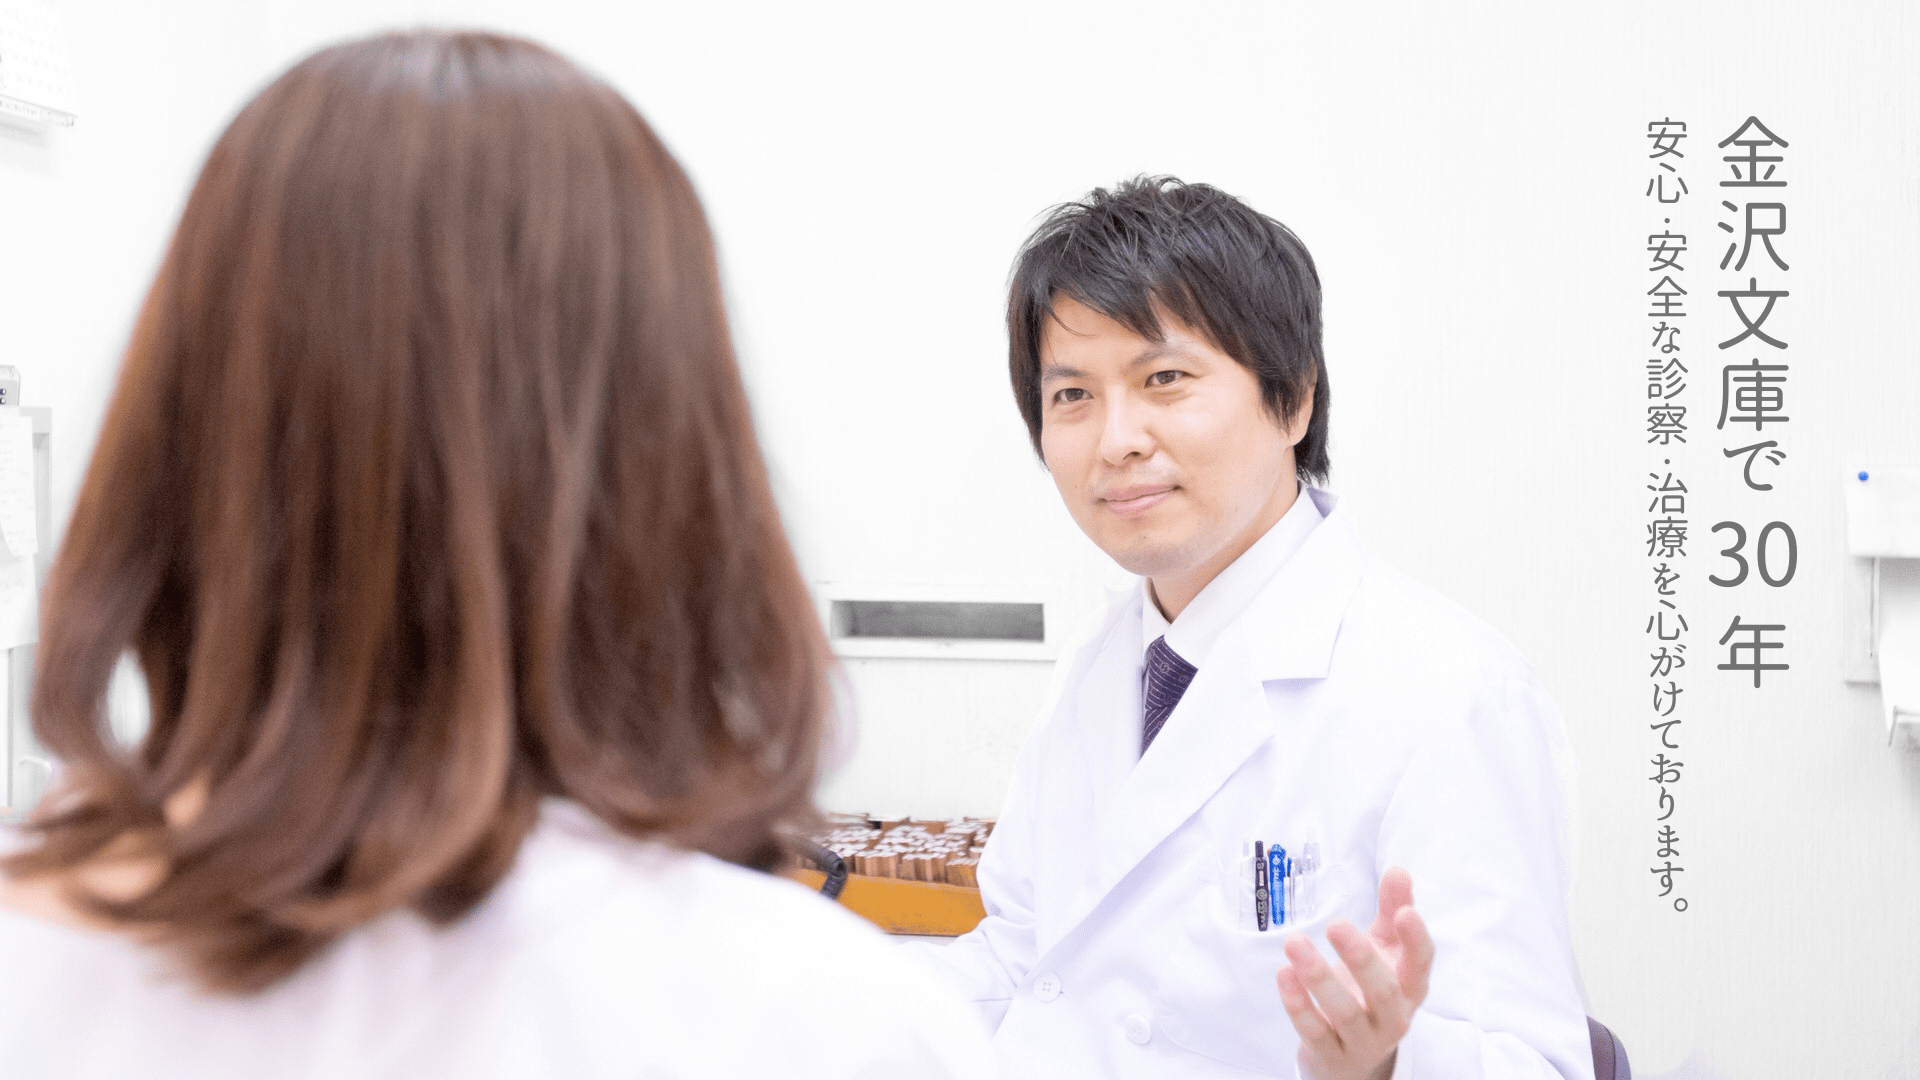 吉村内科医院は横浜区金沢で30年診療しています